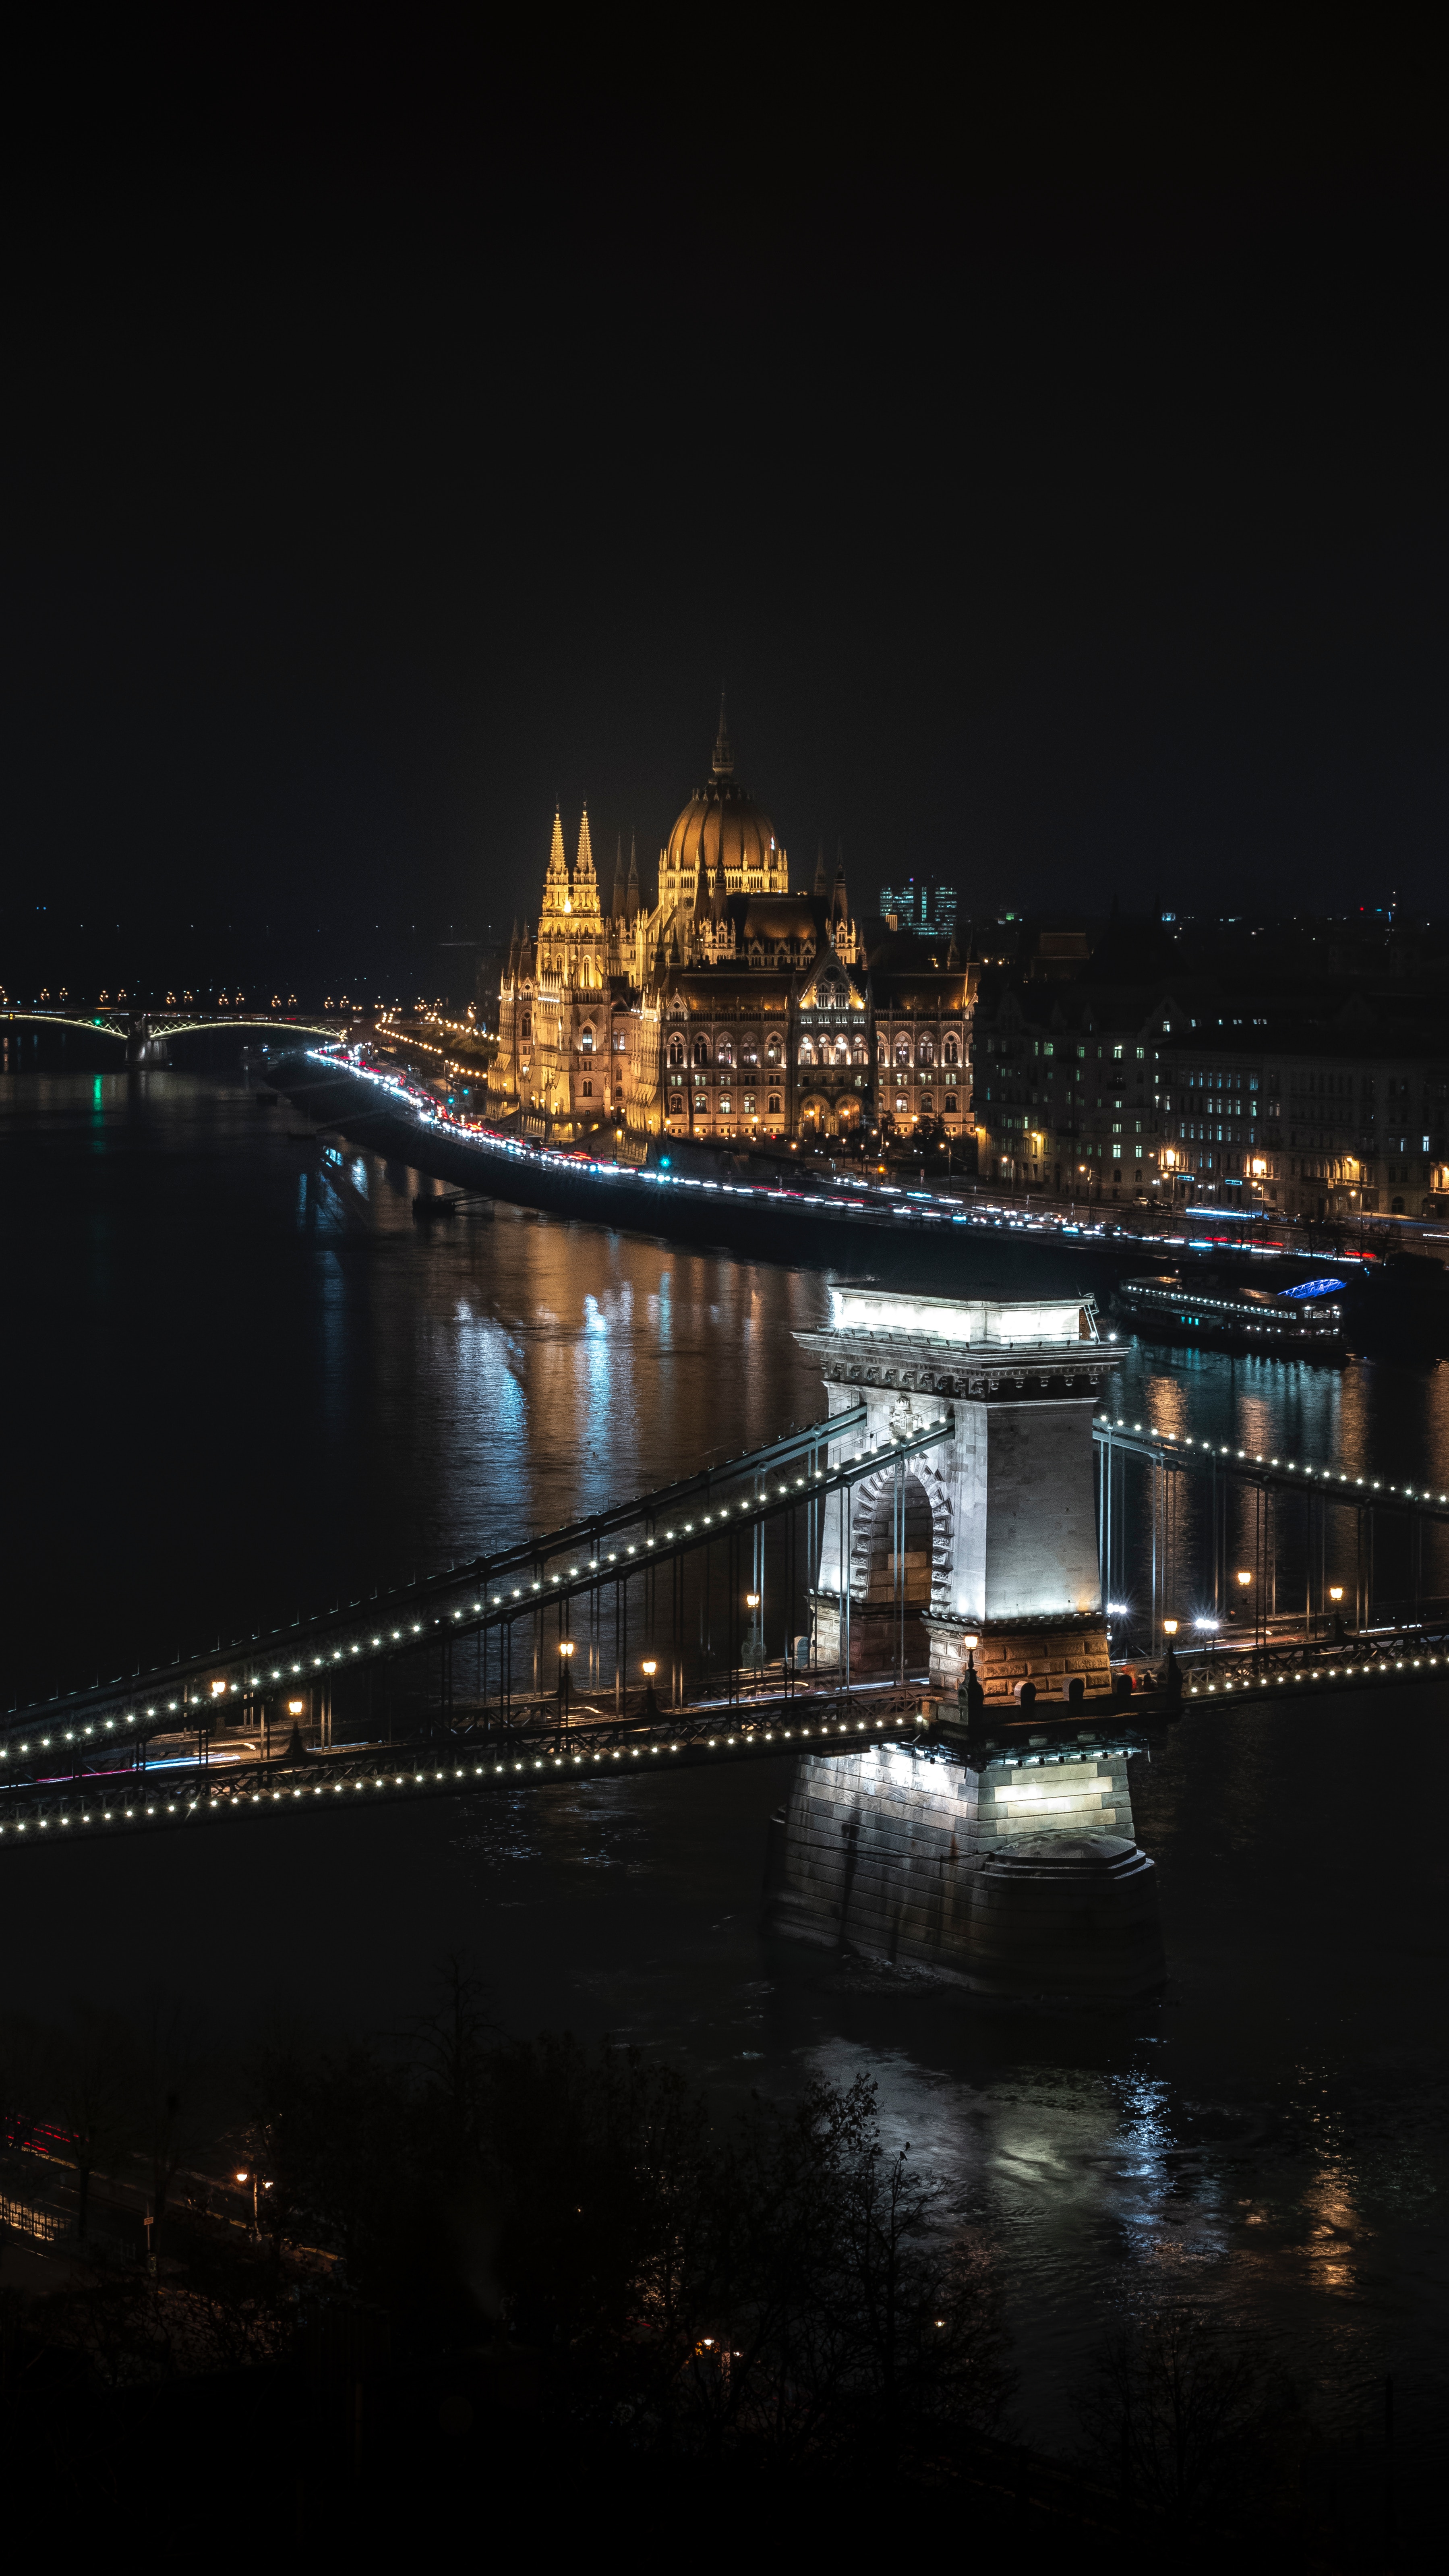 Популярные заставки и фоны Будапешт на компьютер